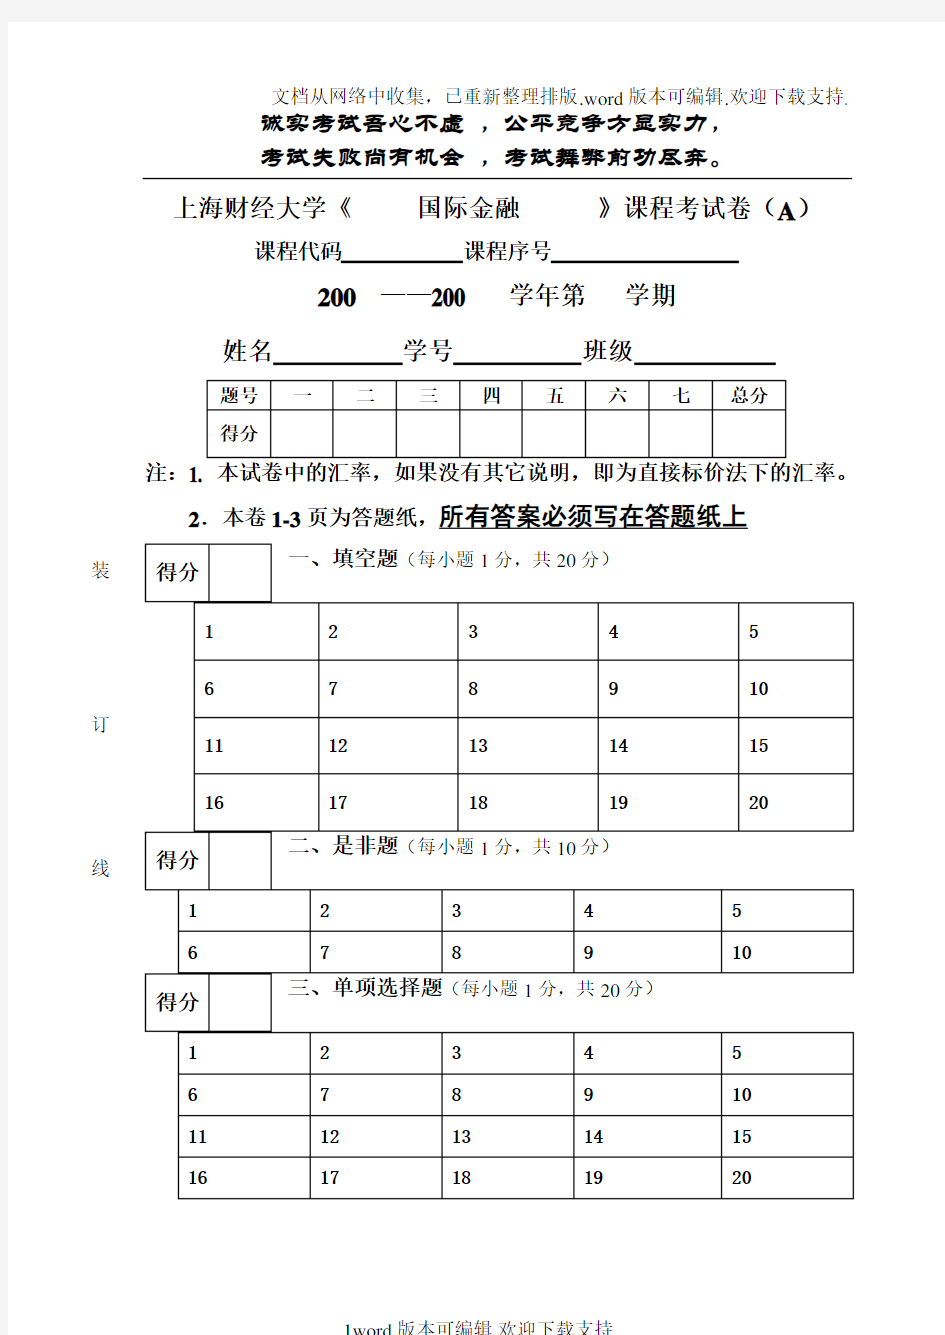 上海财经大学国际金融课程考试卷